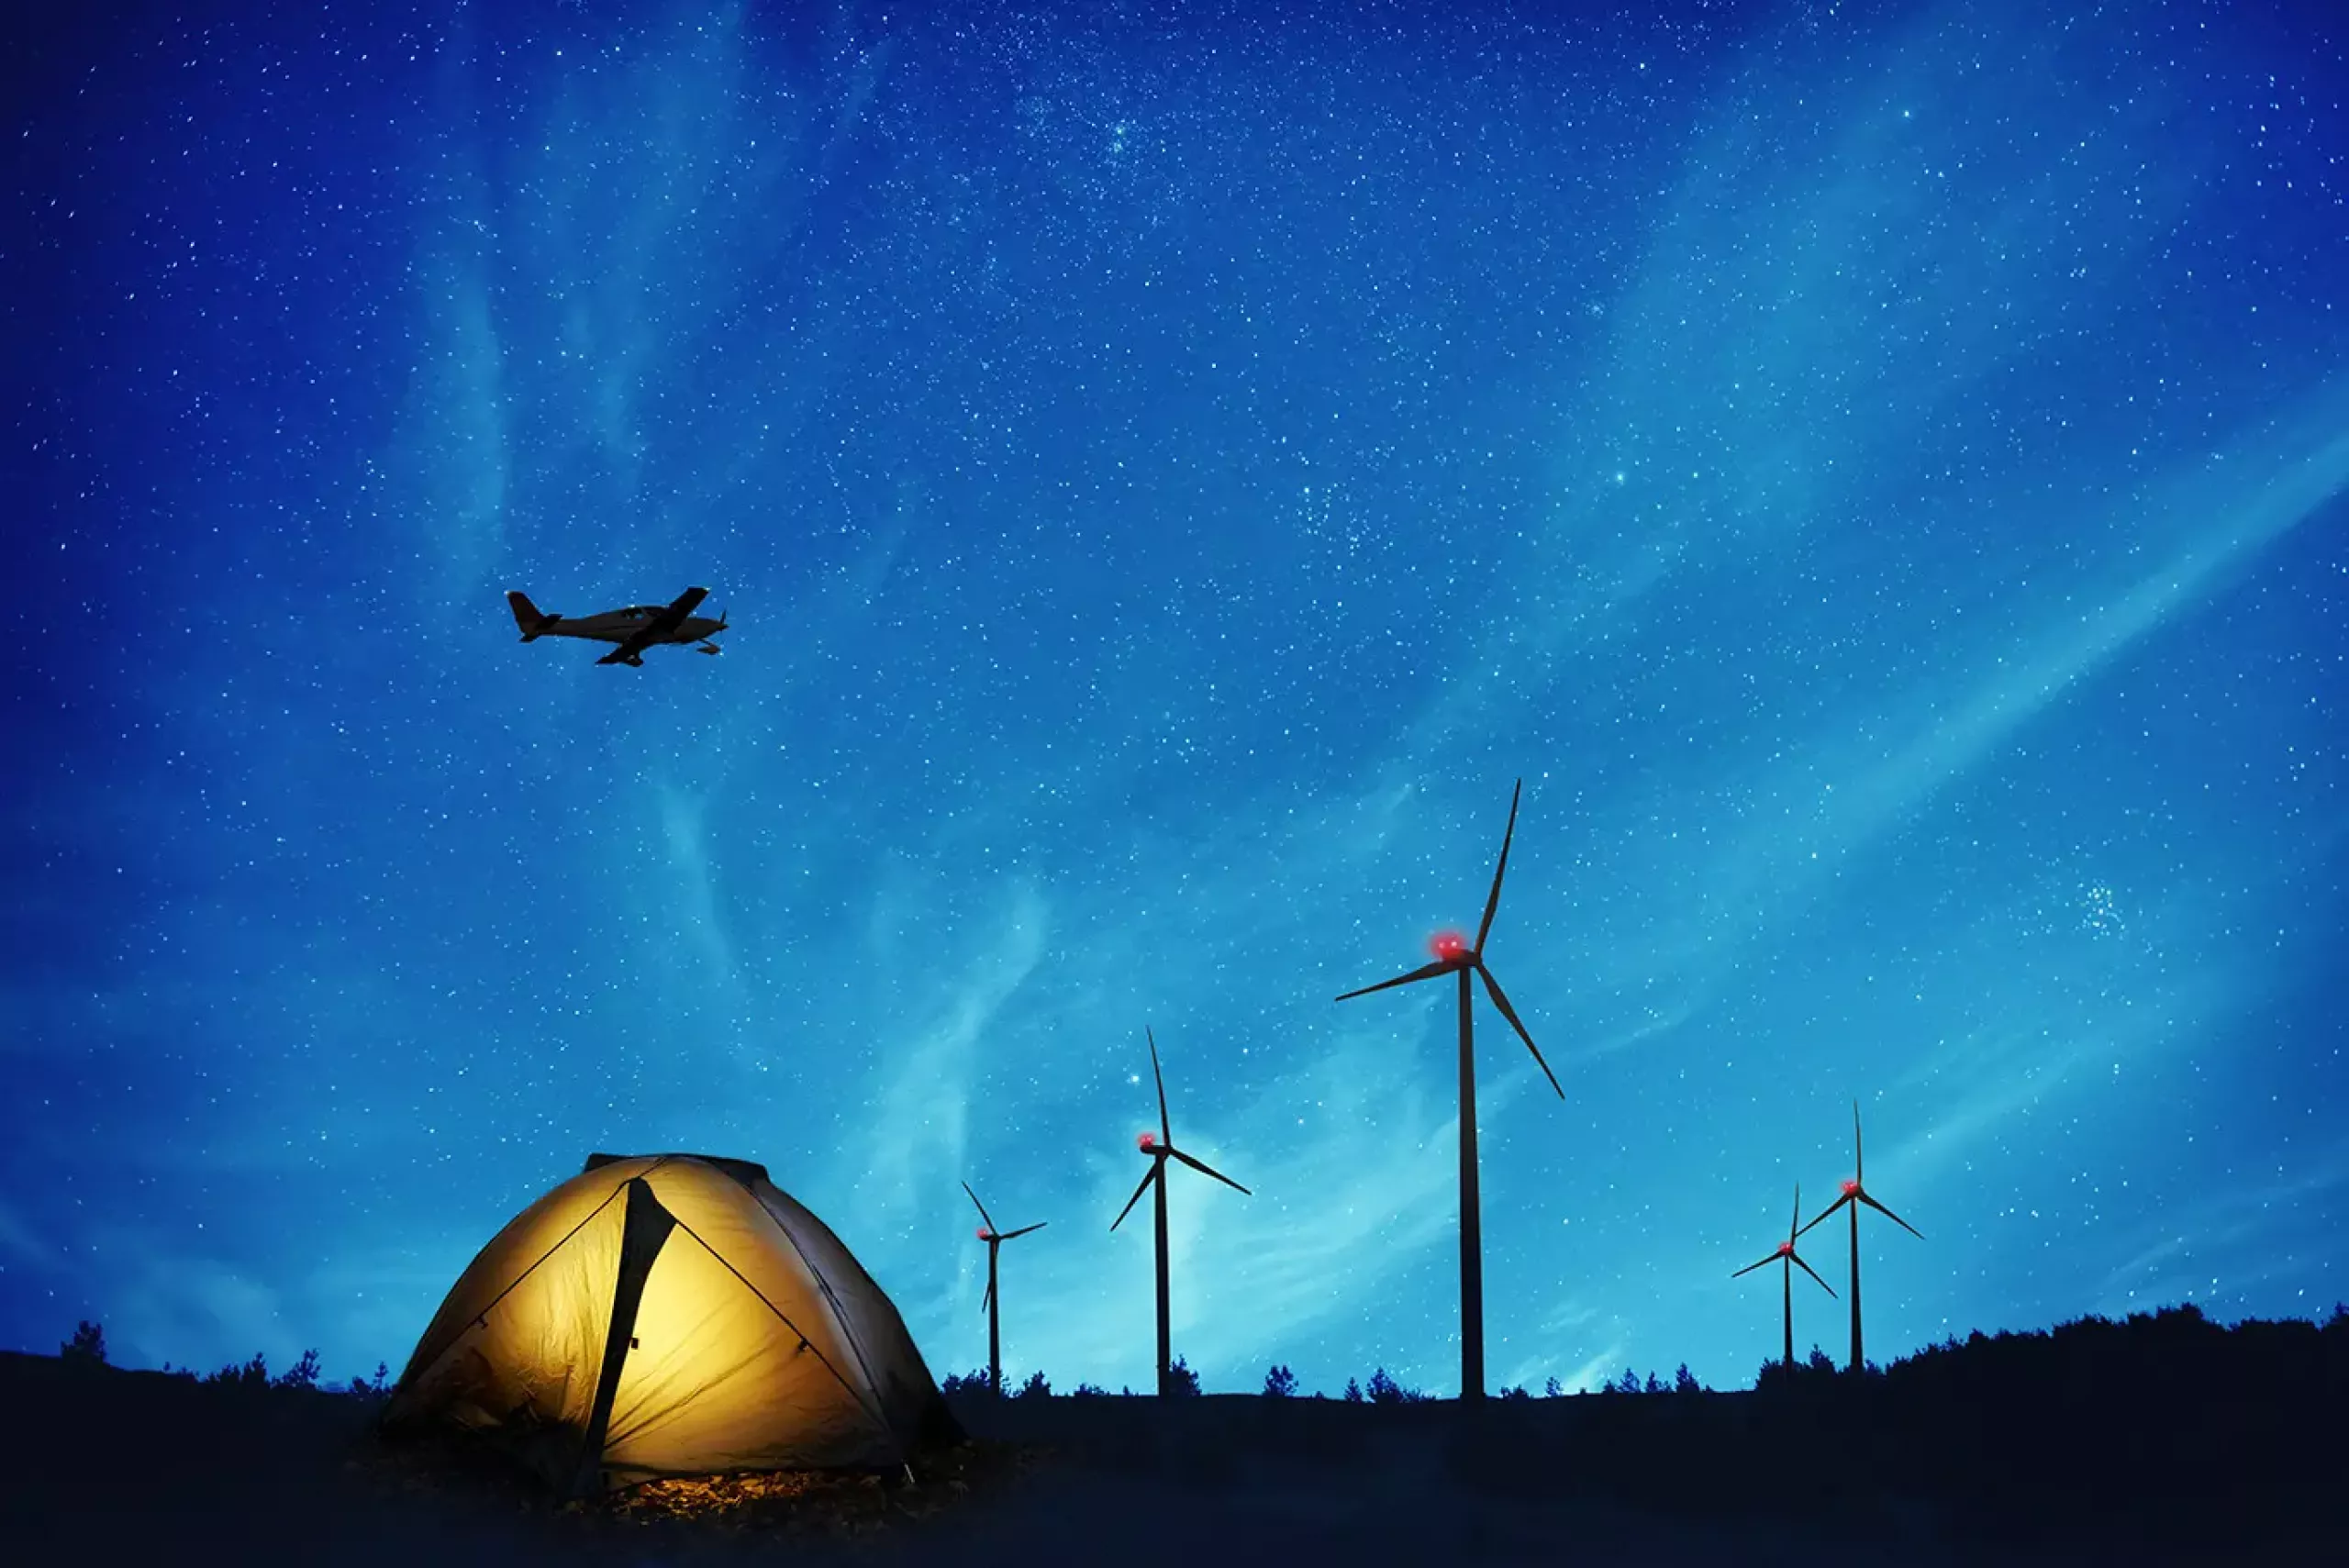 Ein beleuchtetes Zelt unter einem sternenklaren Nachthimmel, mit Windenergieanlagen, die mit BNK ausgestattet sind und einem darüber fliegenden Flugzeug im Hintergrund.